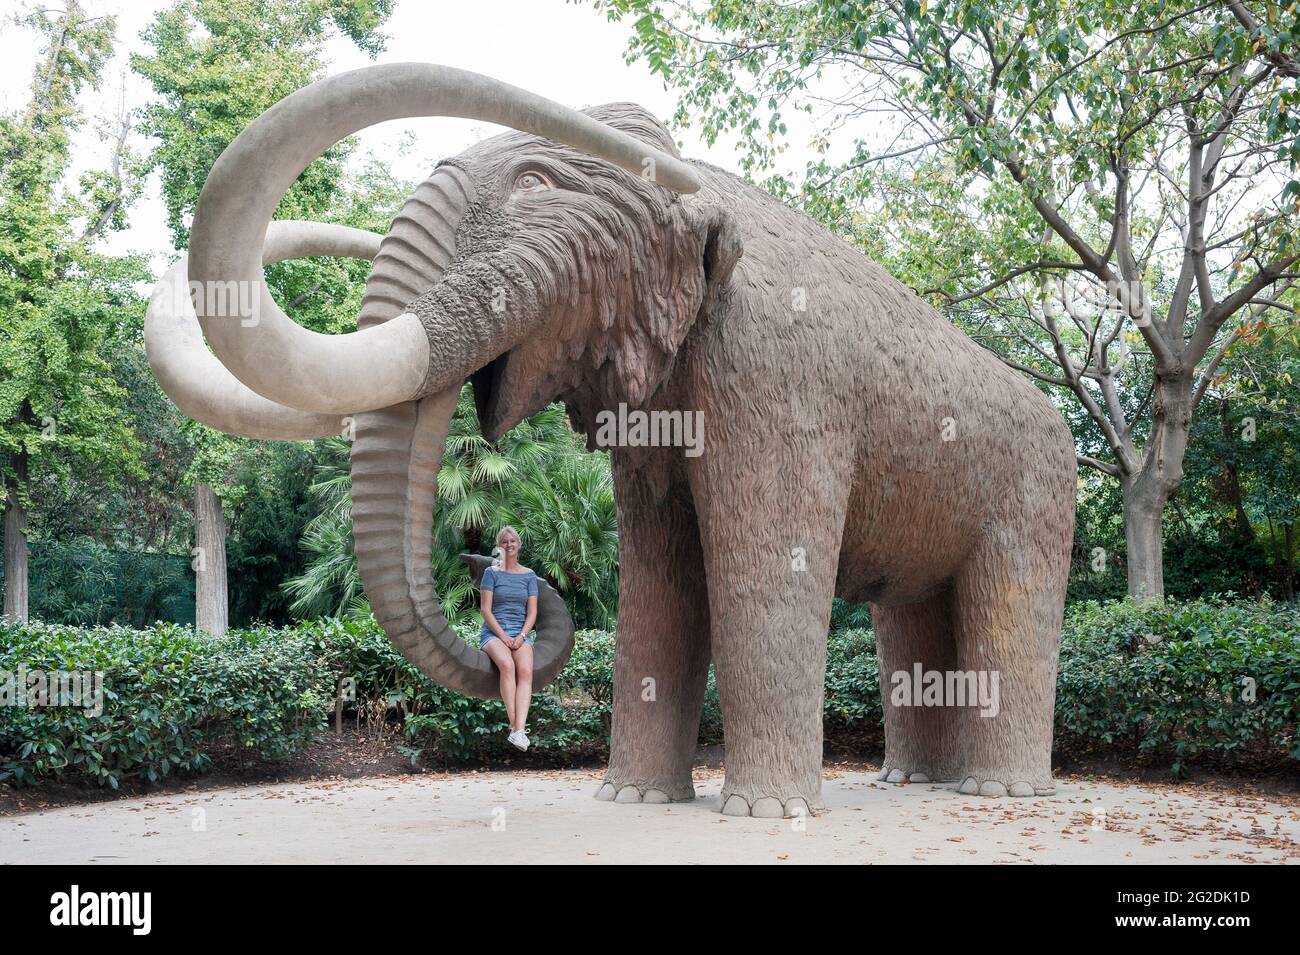 Une femme est assise dans un tronc d'éléphants géant dans un parc de Barcelone, en Espagne Banque D'Images